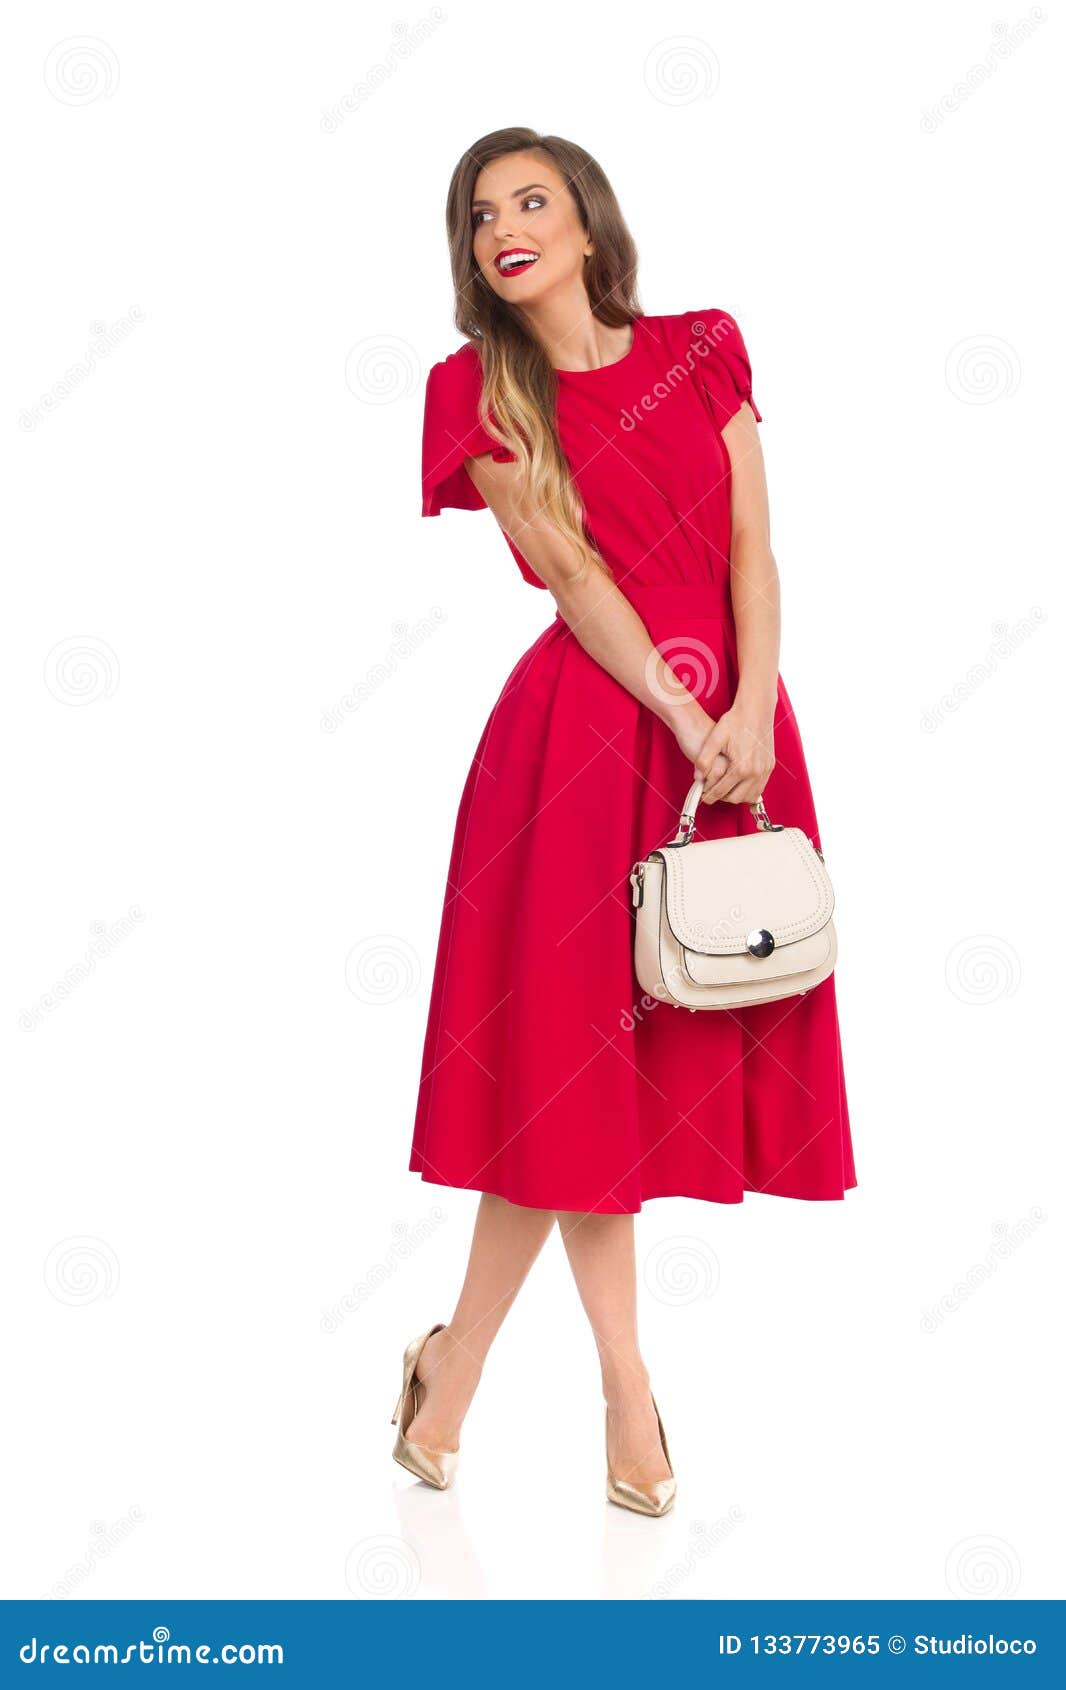 La Mujer De Moda Feliz En Vestido Rojo, Tacones Altos Del Oro Y Monedero Está Mirando Lejos Imagen de archivo - Imagen de feminidad, manera: 133773965